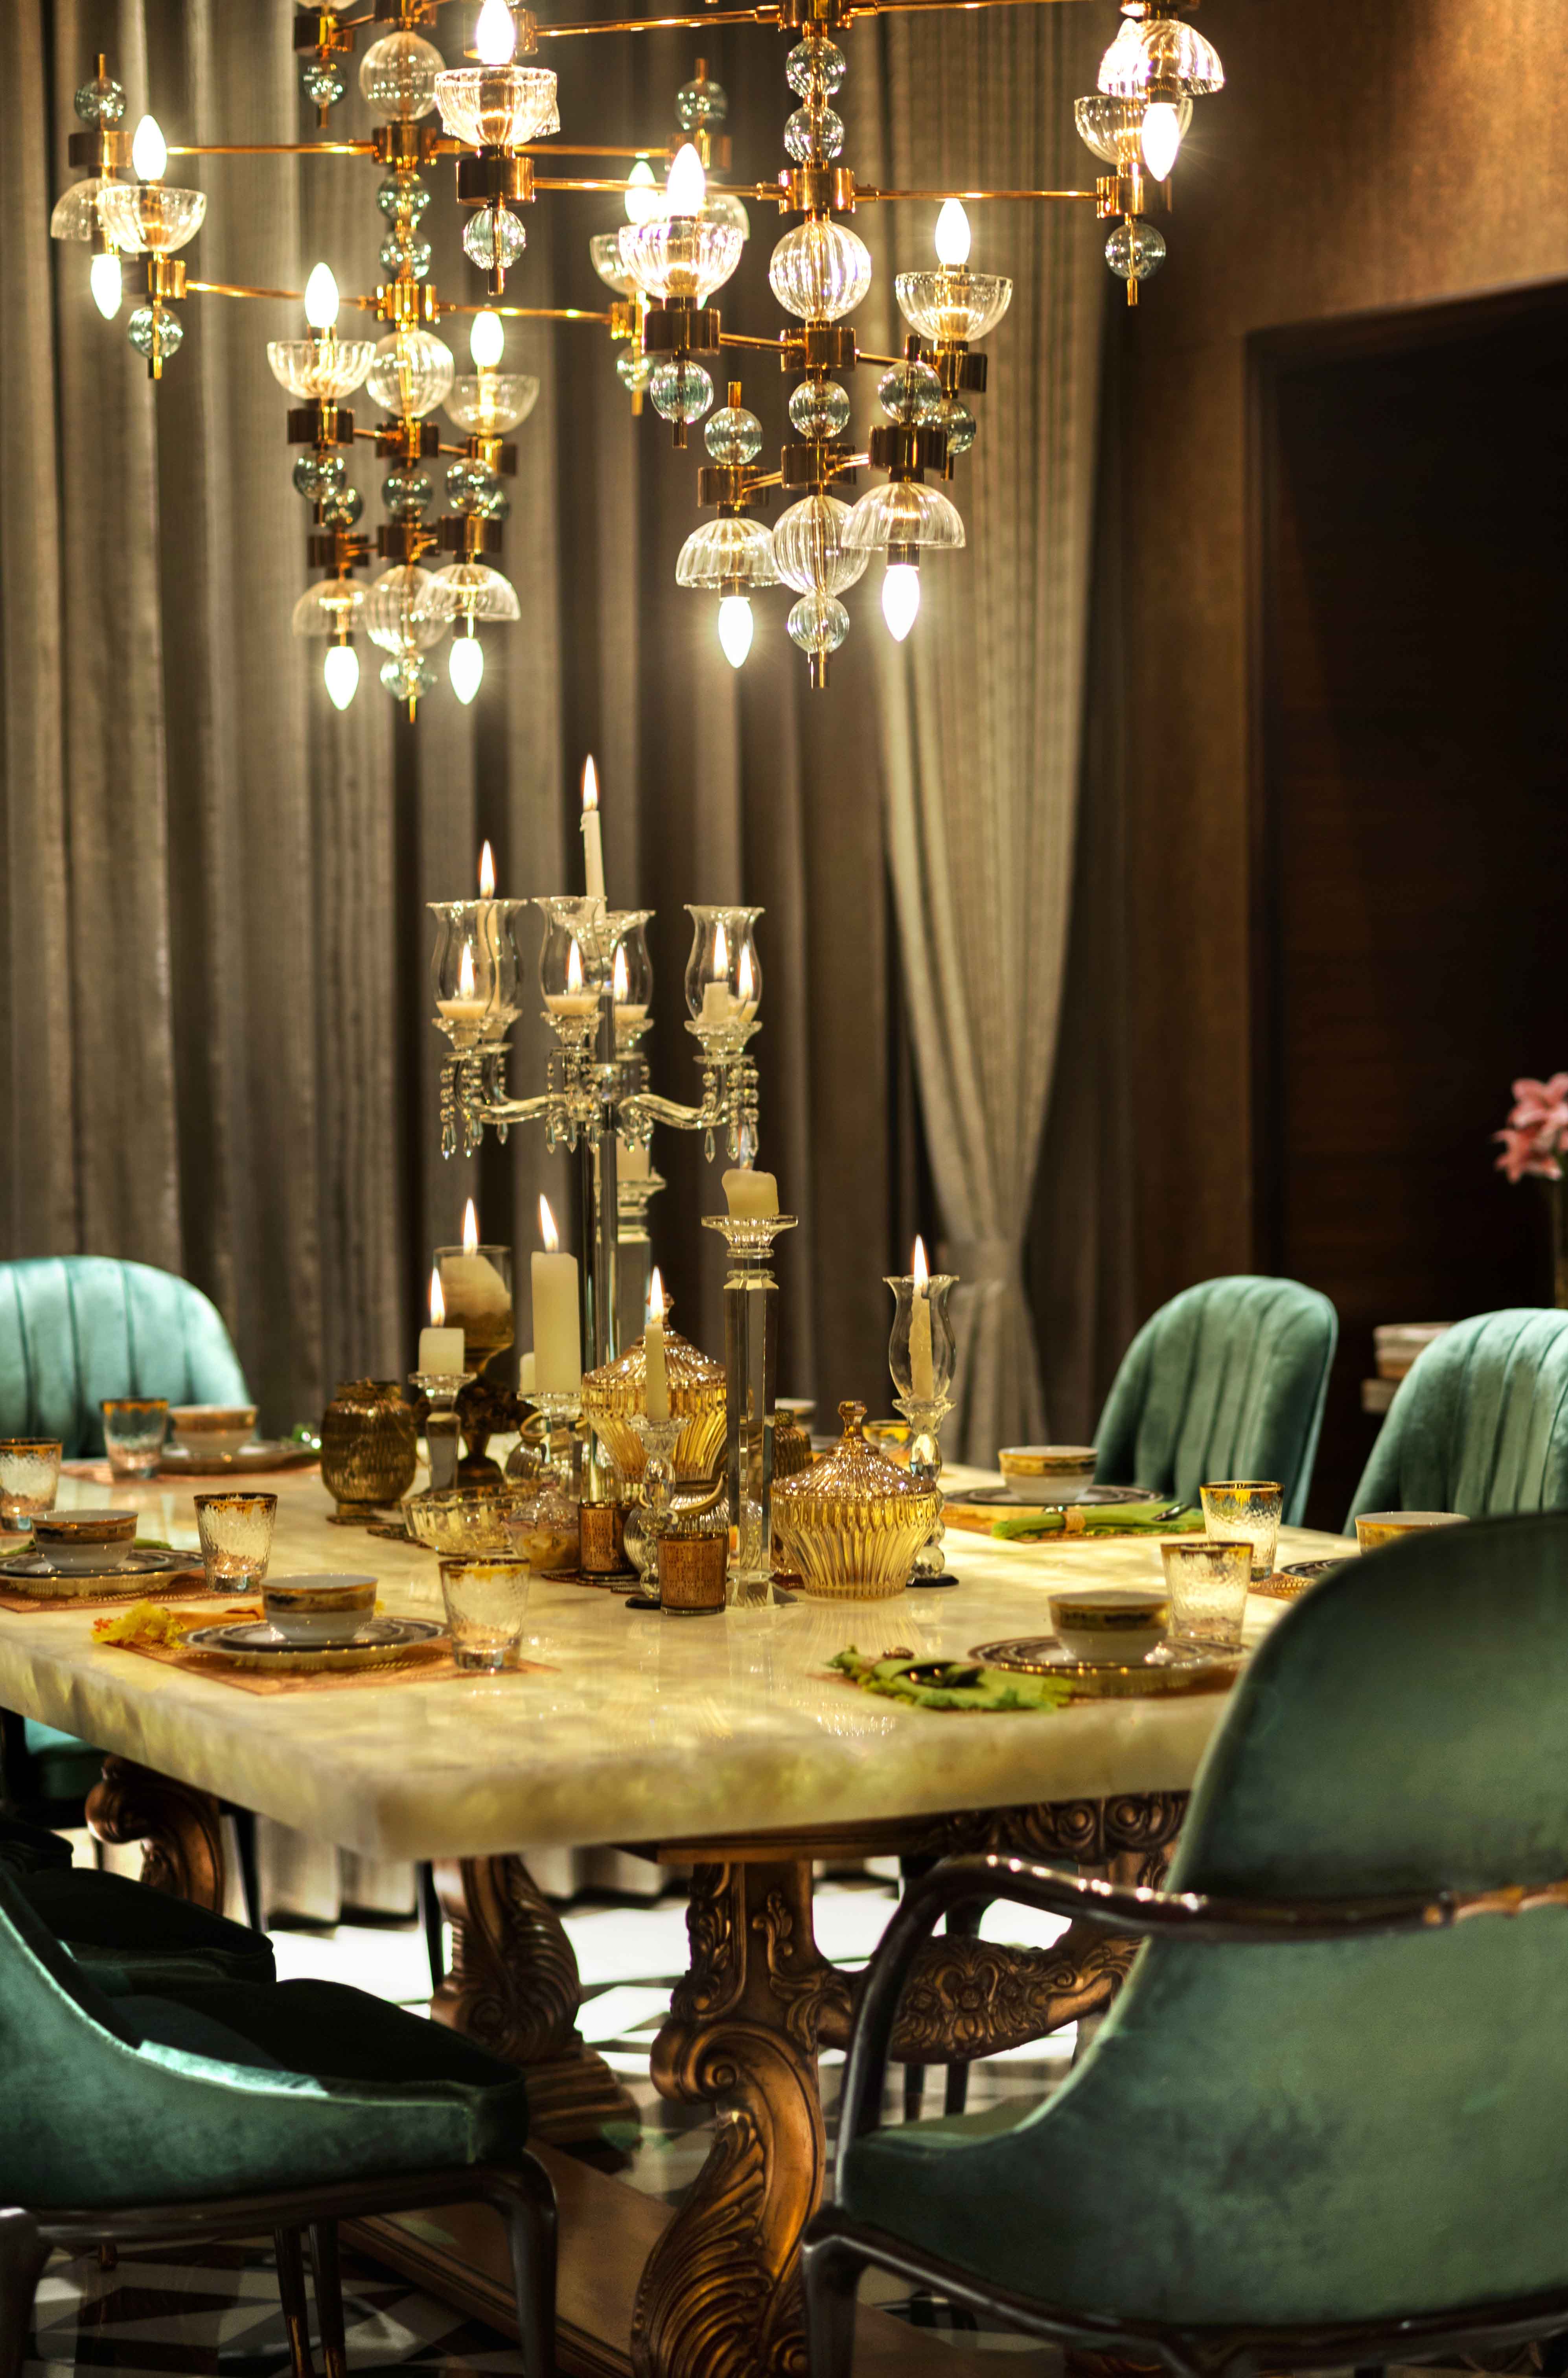 Design Atelier Presents Opulent Tablescape for Festivals